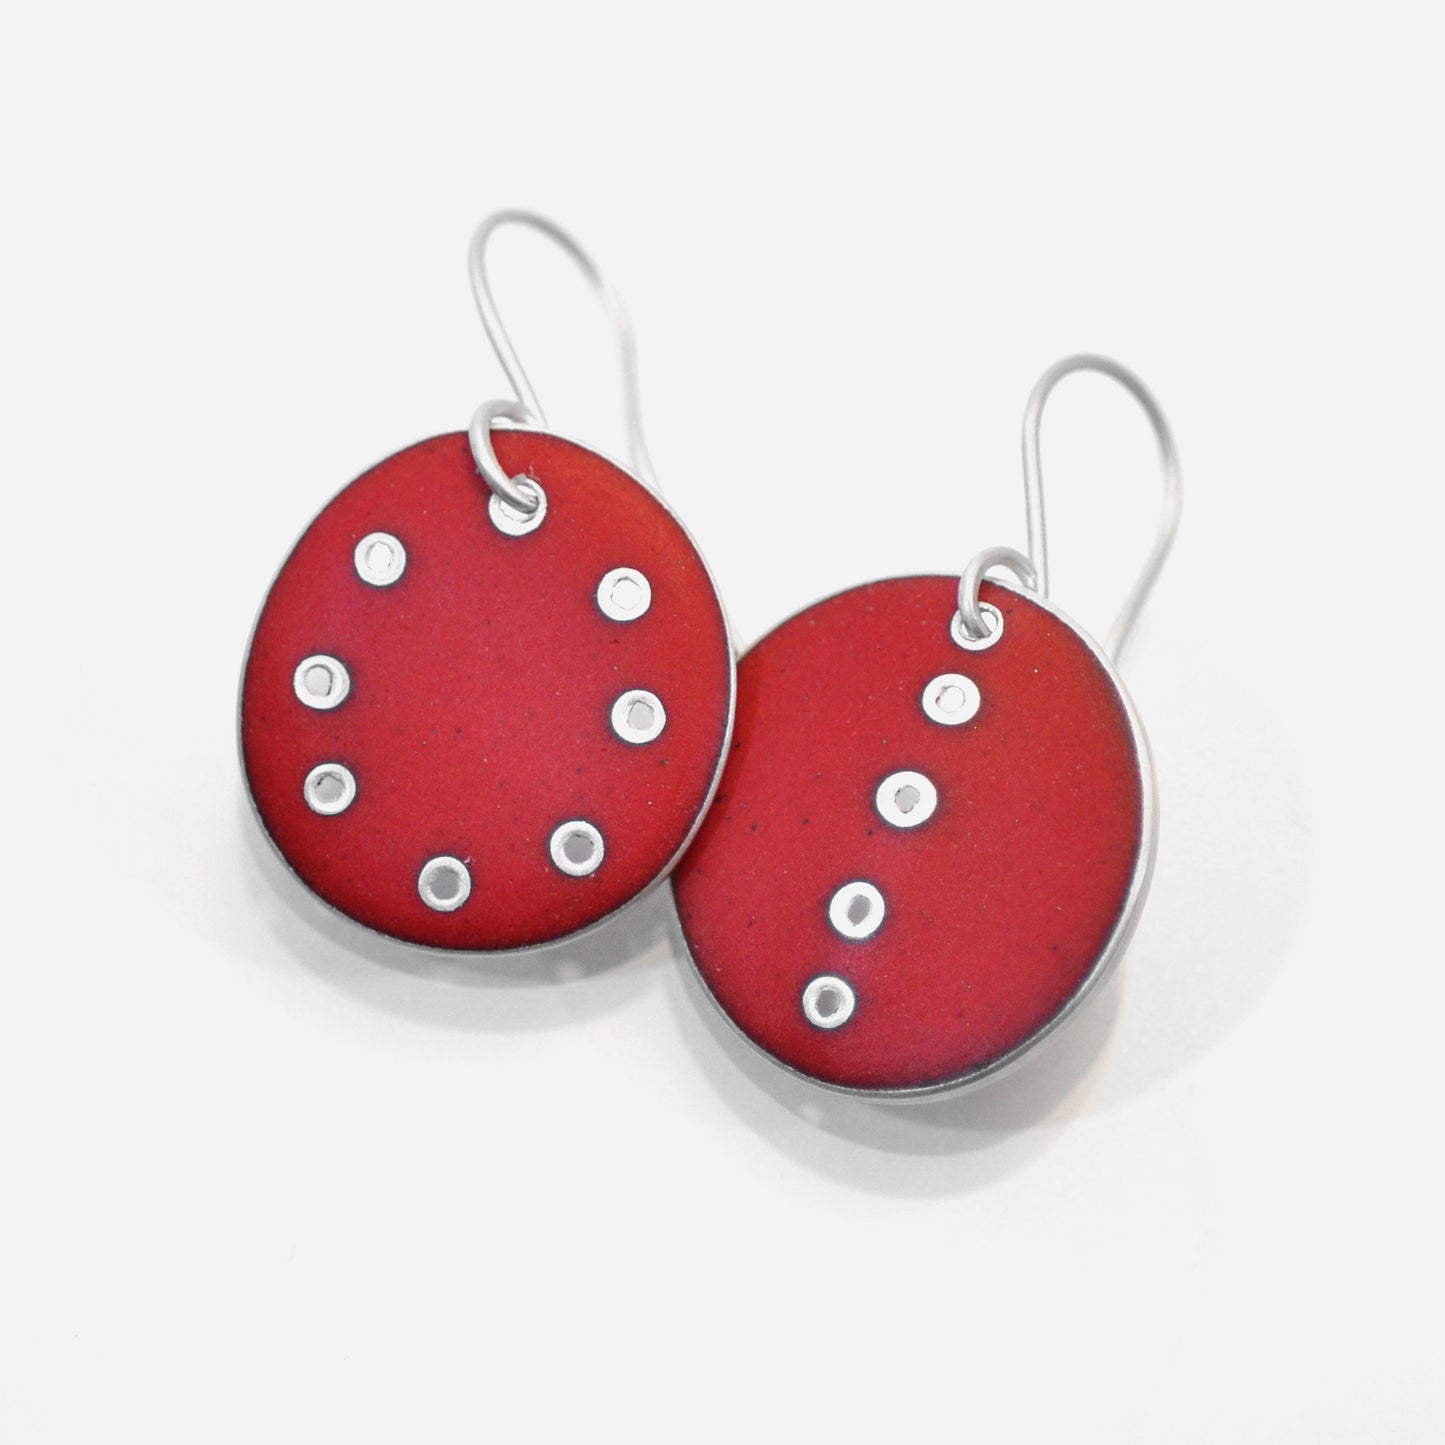 Red odd pair of earrings